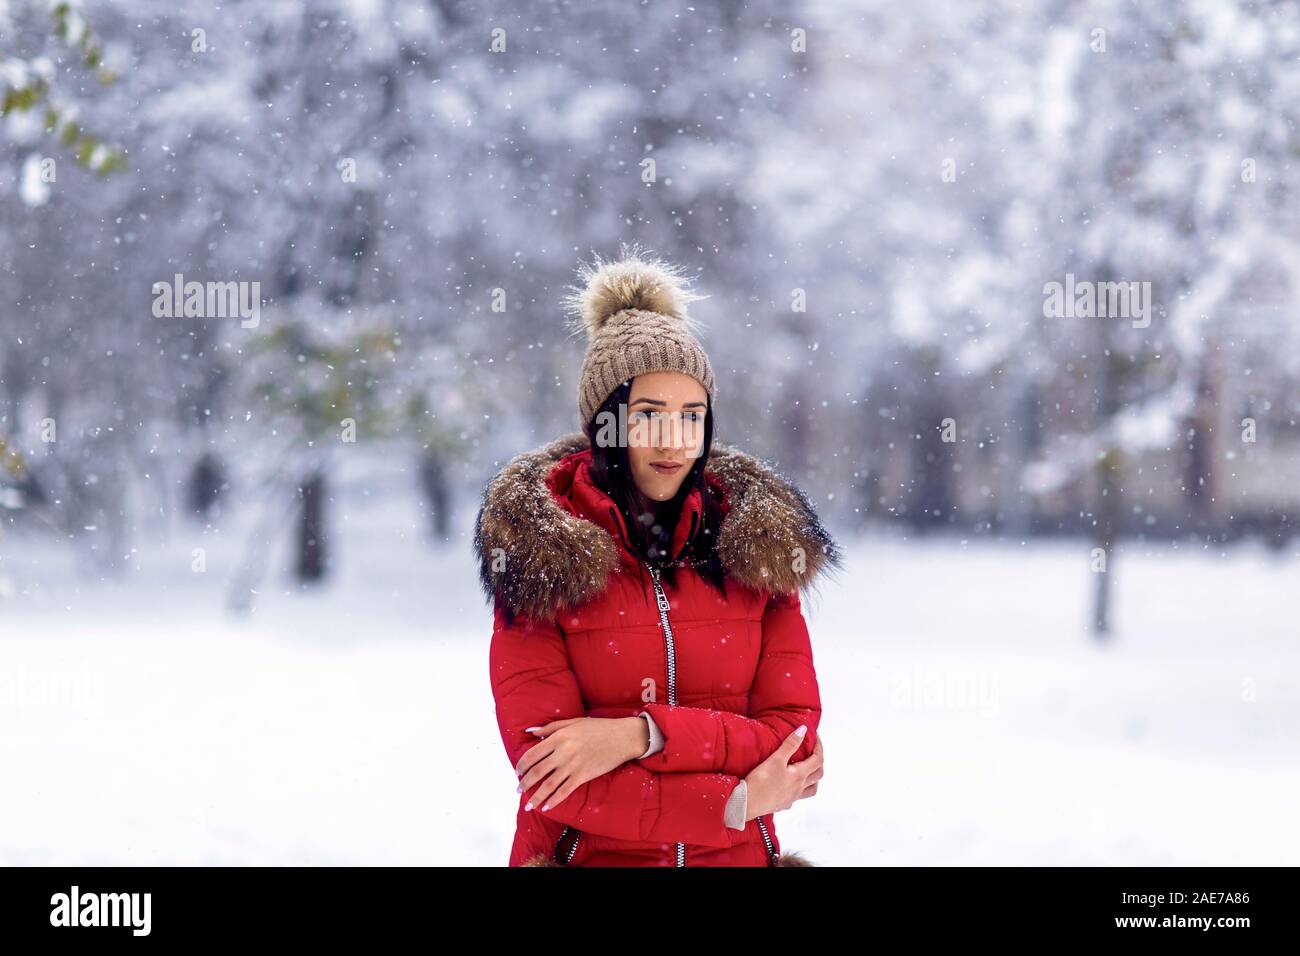 Mujer joven en invierno outdoor.La mujer goza de un invierno. Foto de stock